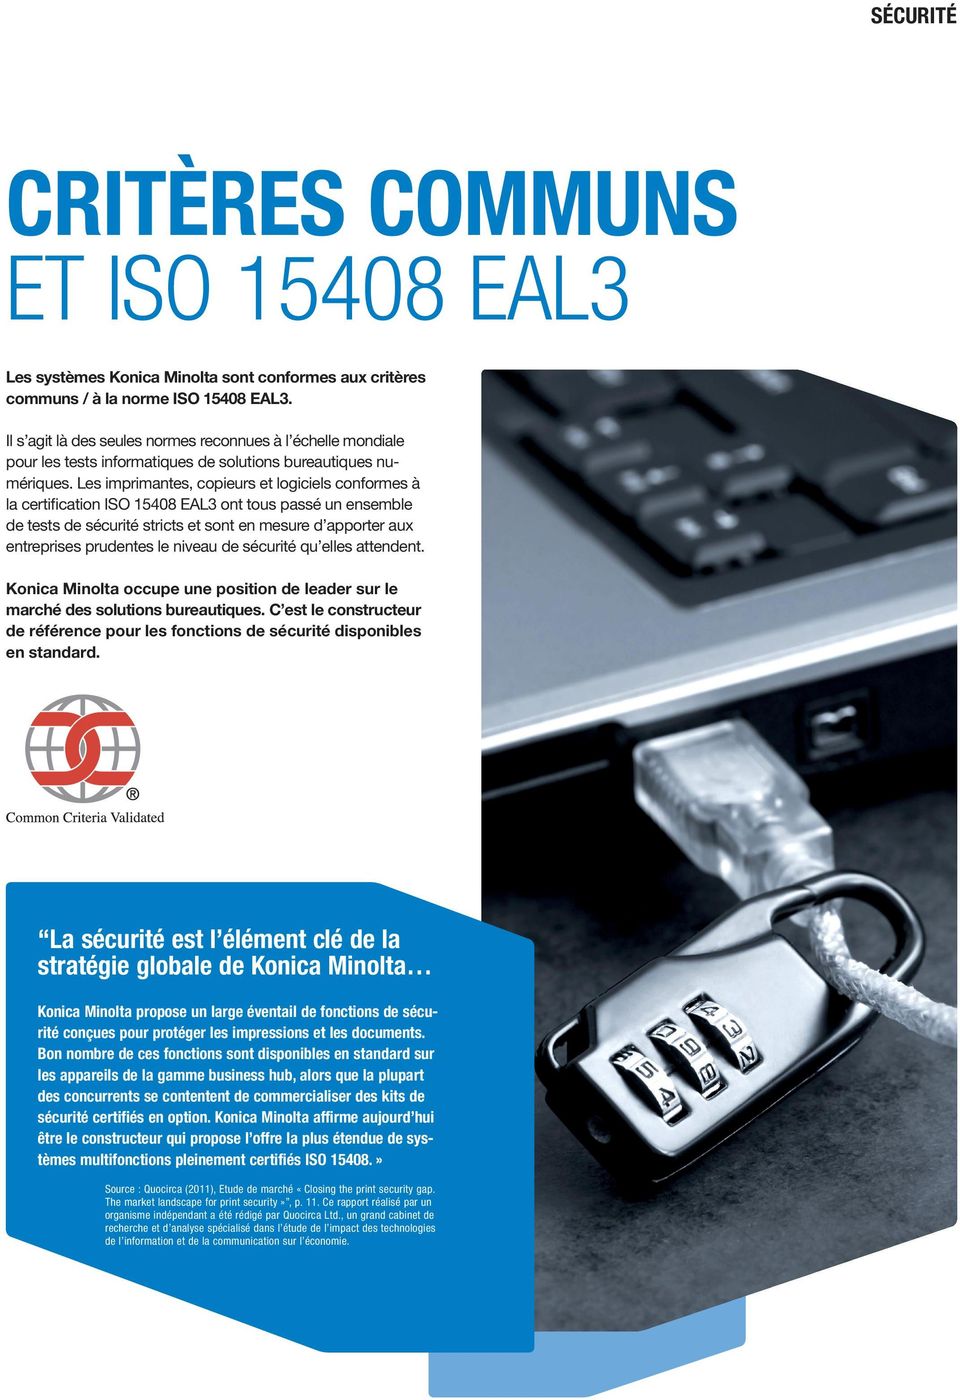 Les imprimantes, copieurs et logiciels conformes à la certification ISO 15408 EAL3 ont tous passé un ensemble de tests de sécurité stricts et sont en mesure d apporter aux entreprises prudentes le